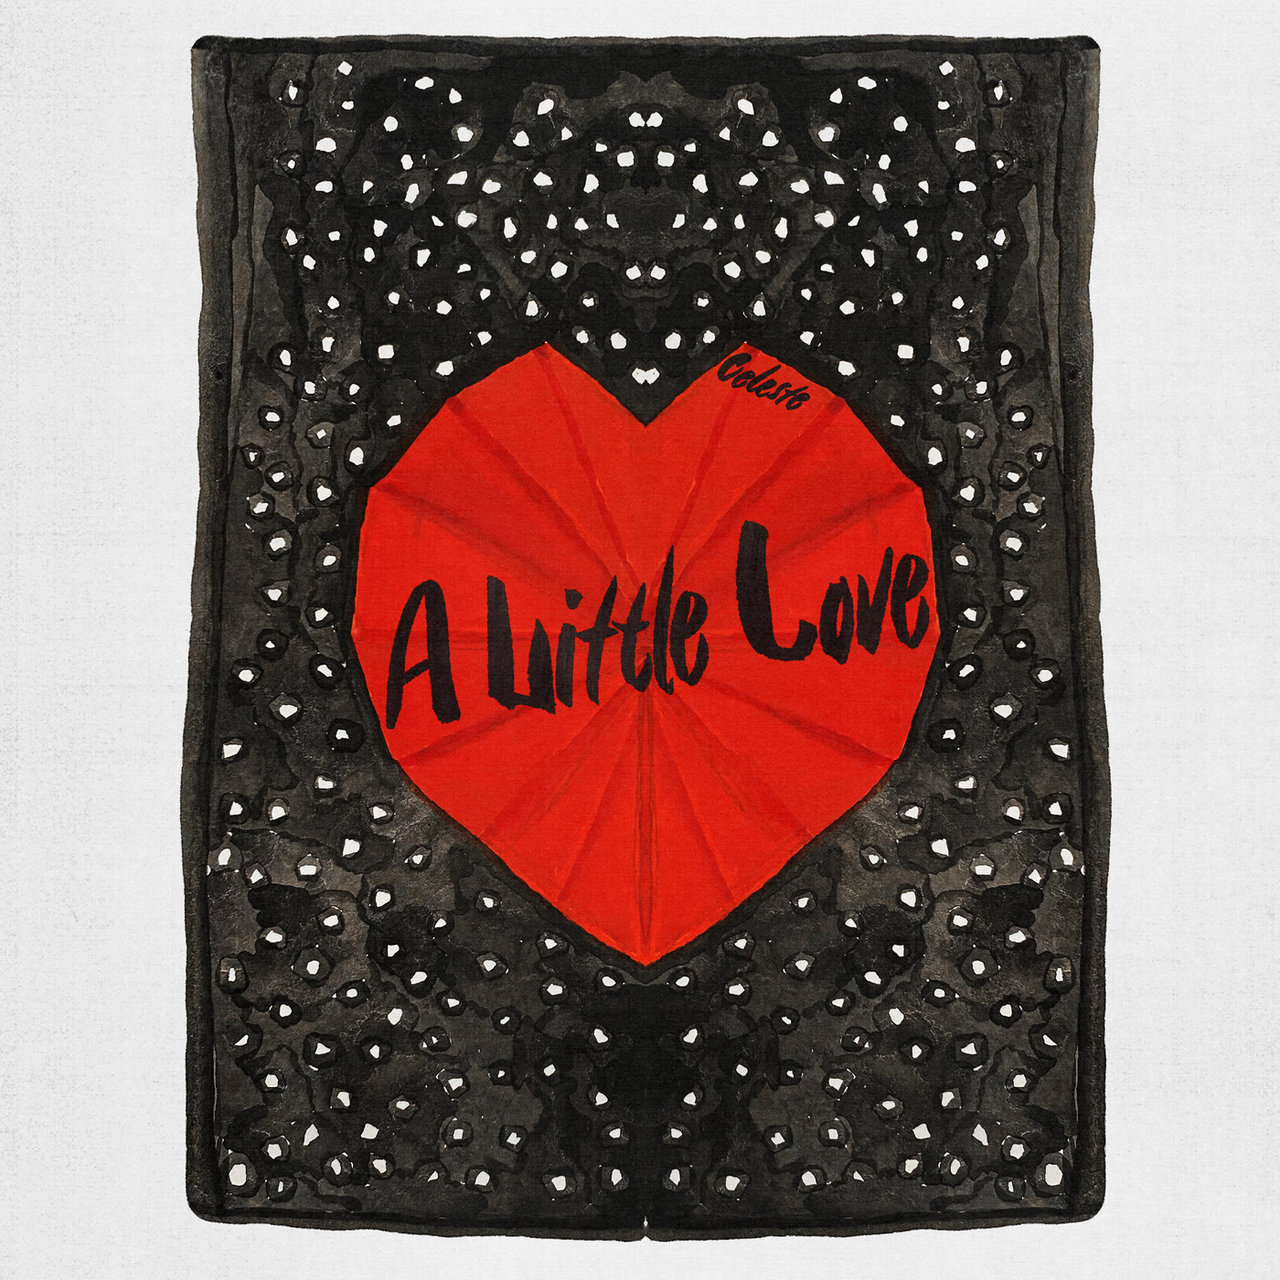 Celeste — A Little Love cover artwork